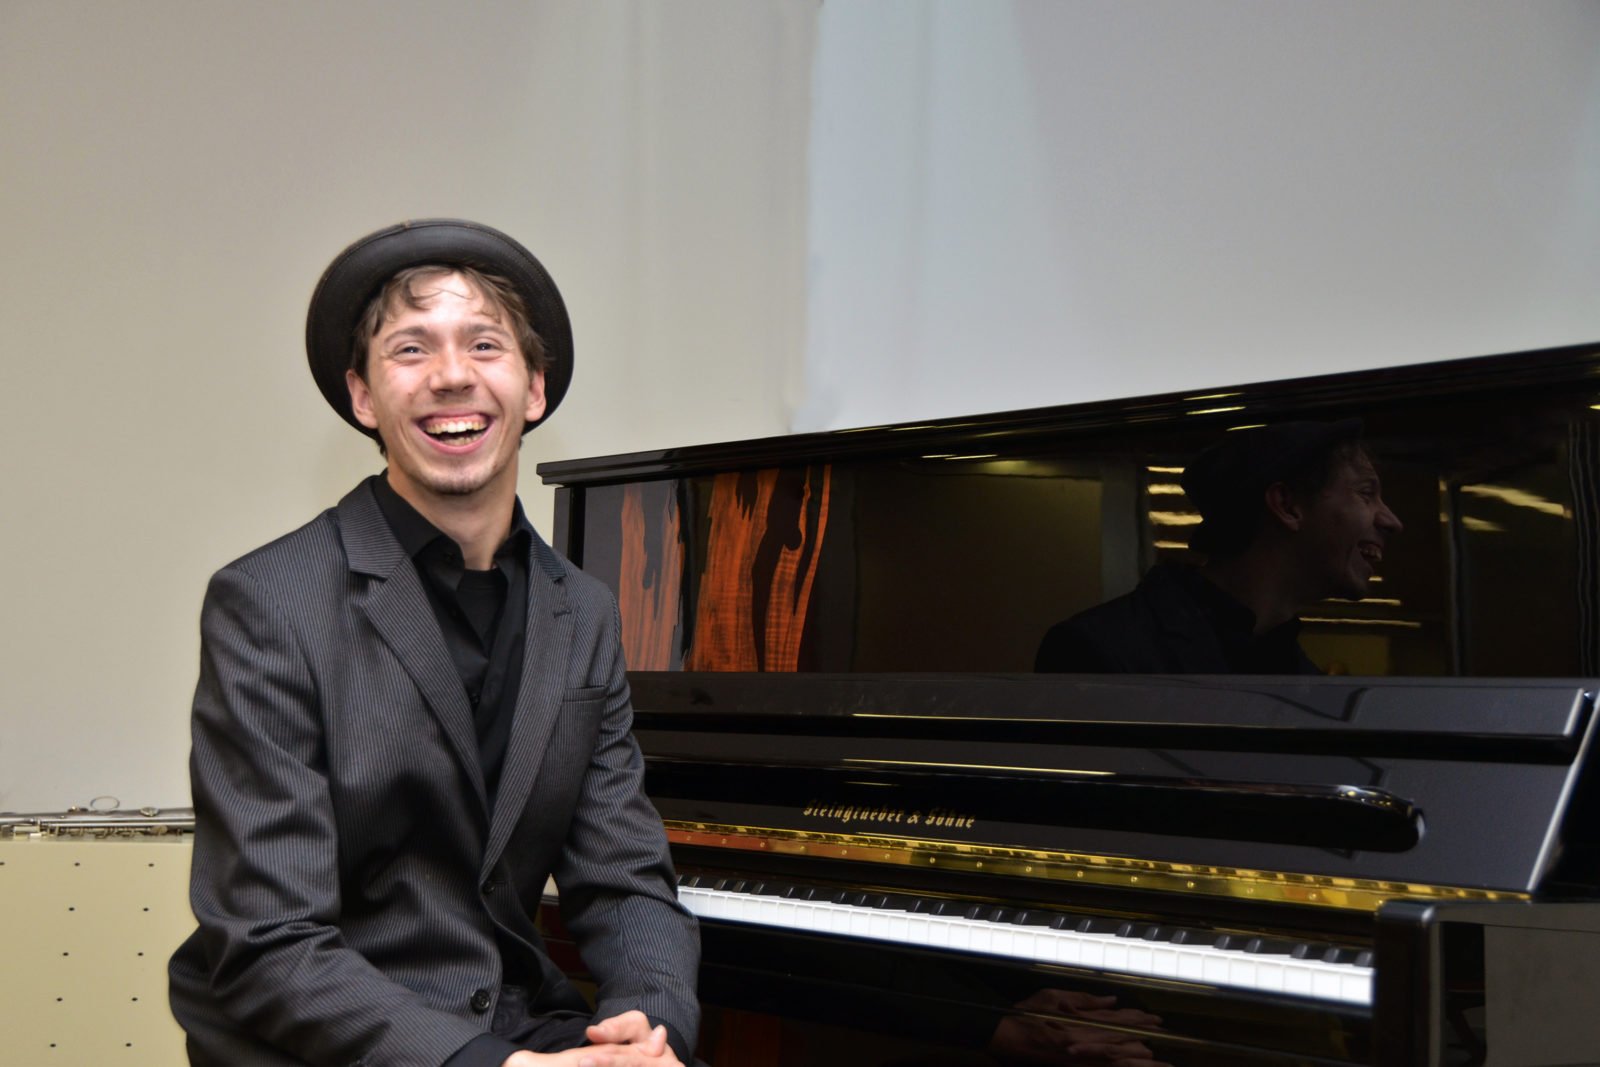 Junger Mann mit Hut sitzt vor einem Klavier und lacht in die Kamera